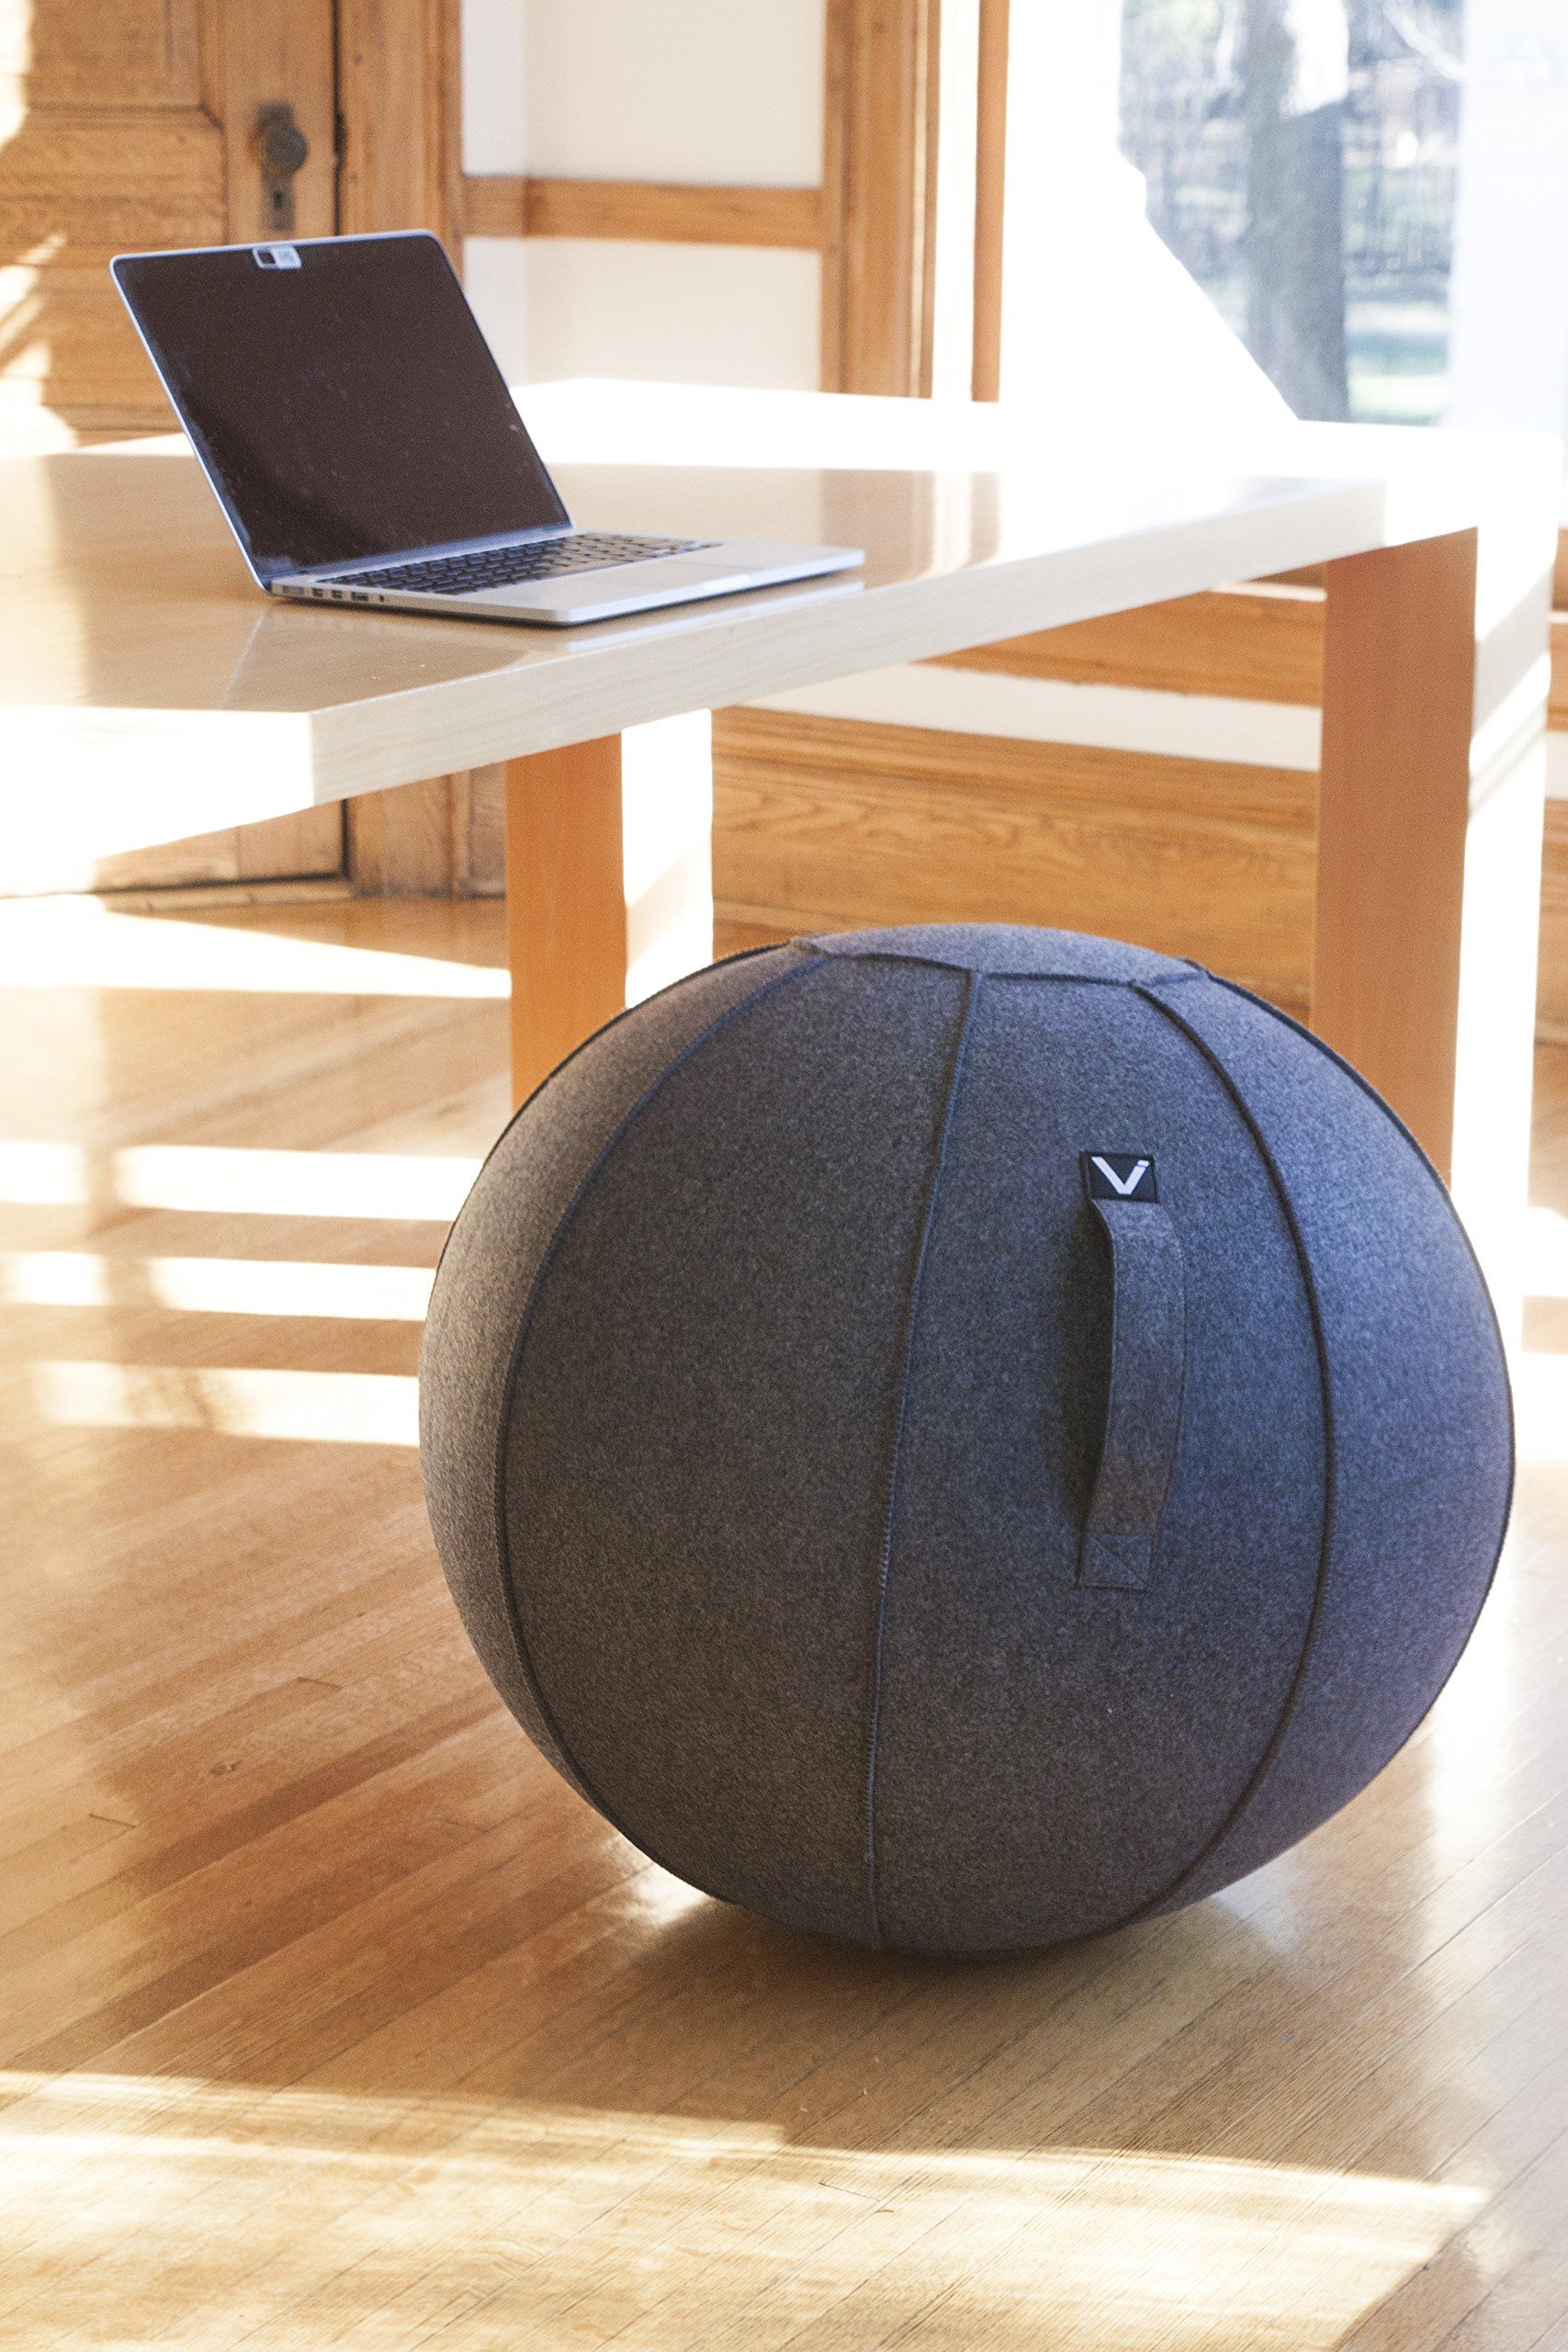 Best Office Ball Chair Ideas